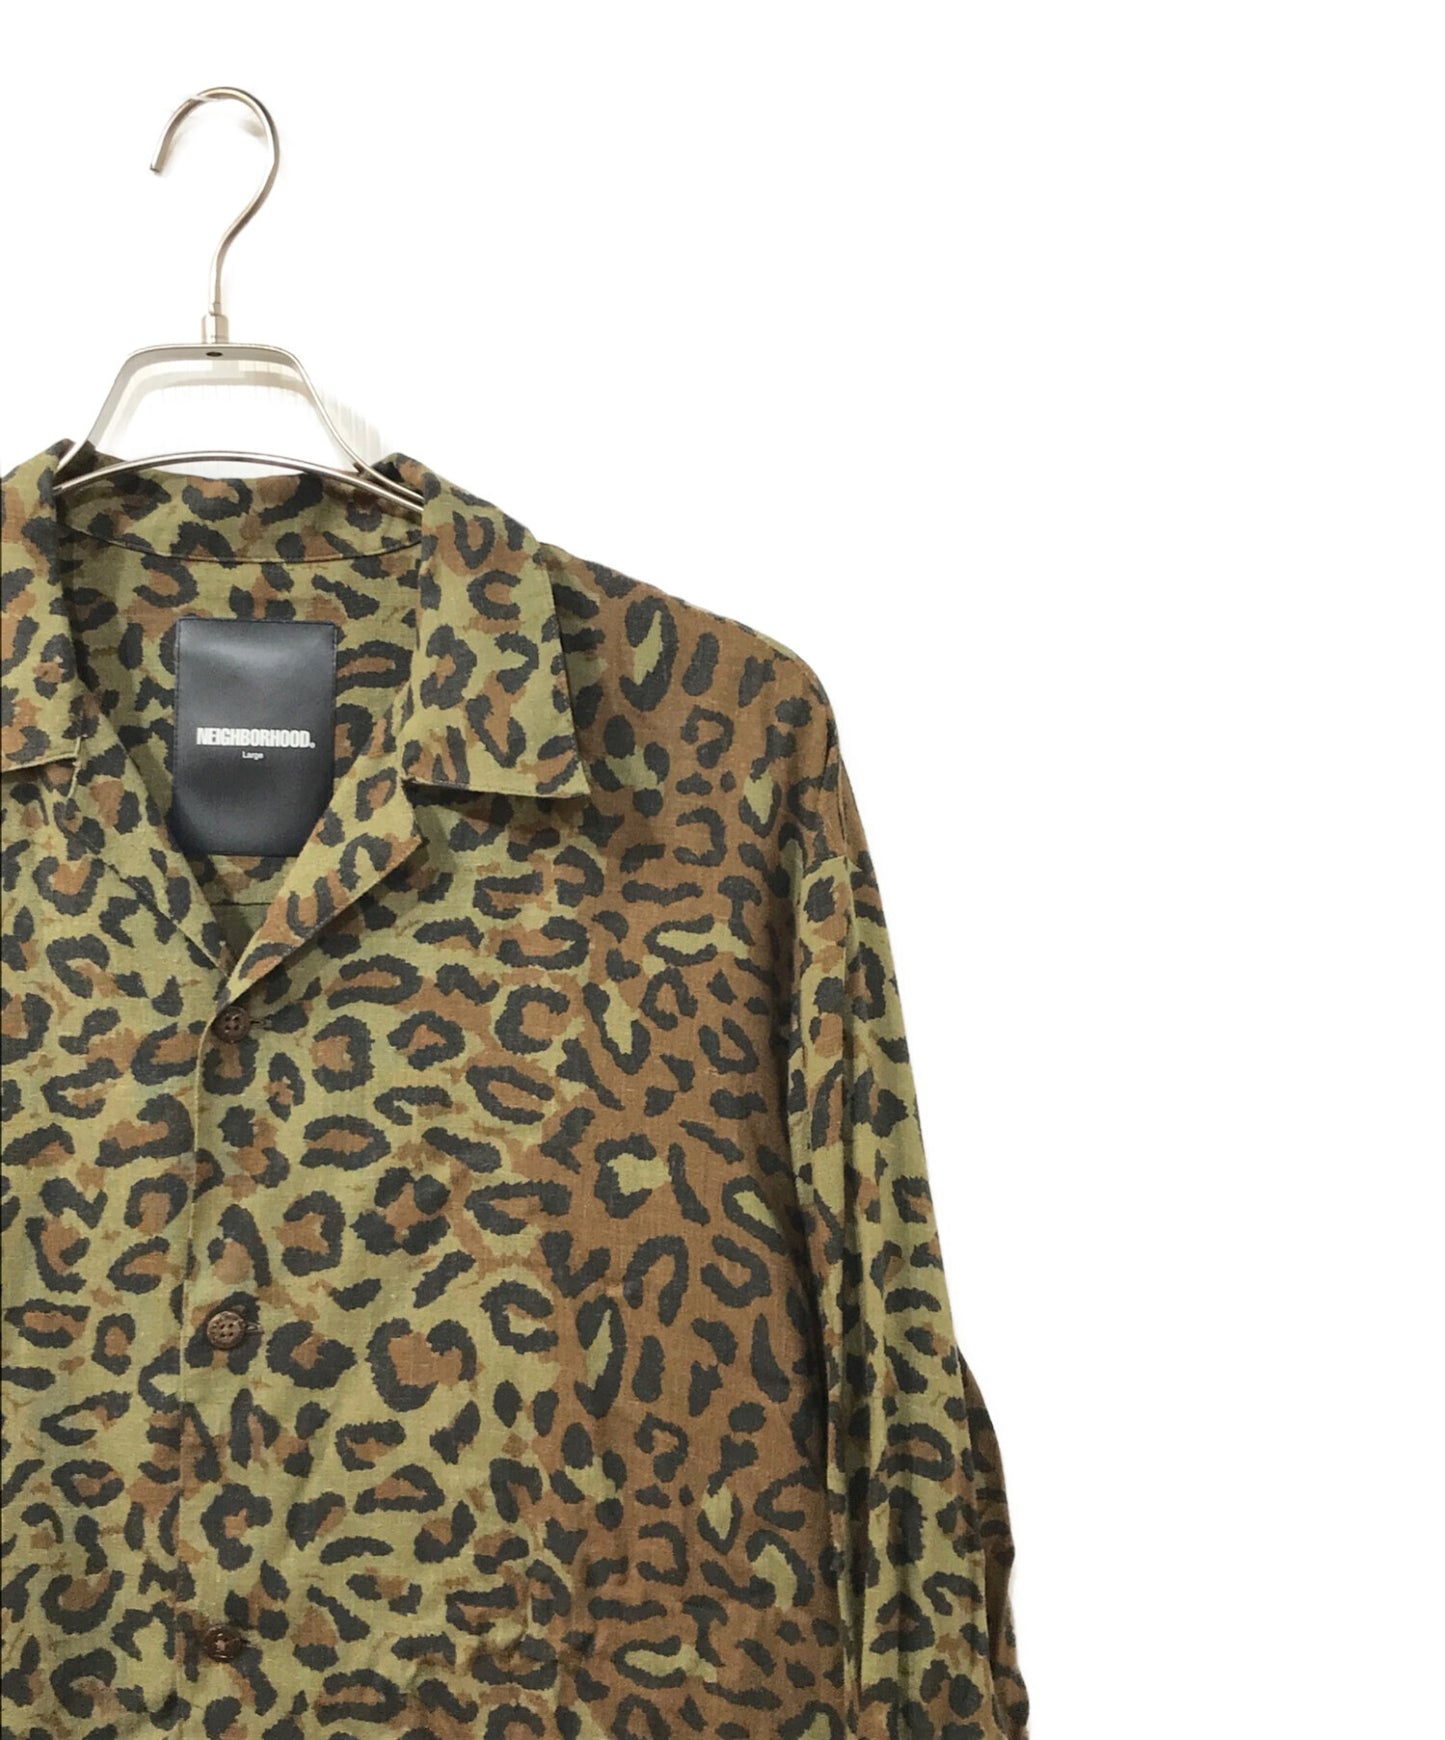 鄰居Aloha.Leopard/rl Shirt.ls 201TSNH-SHM05